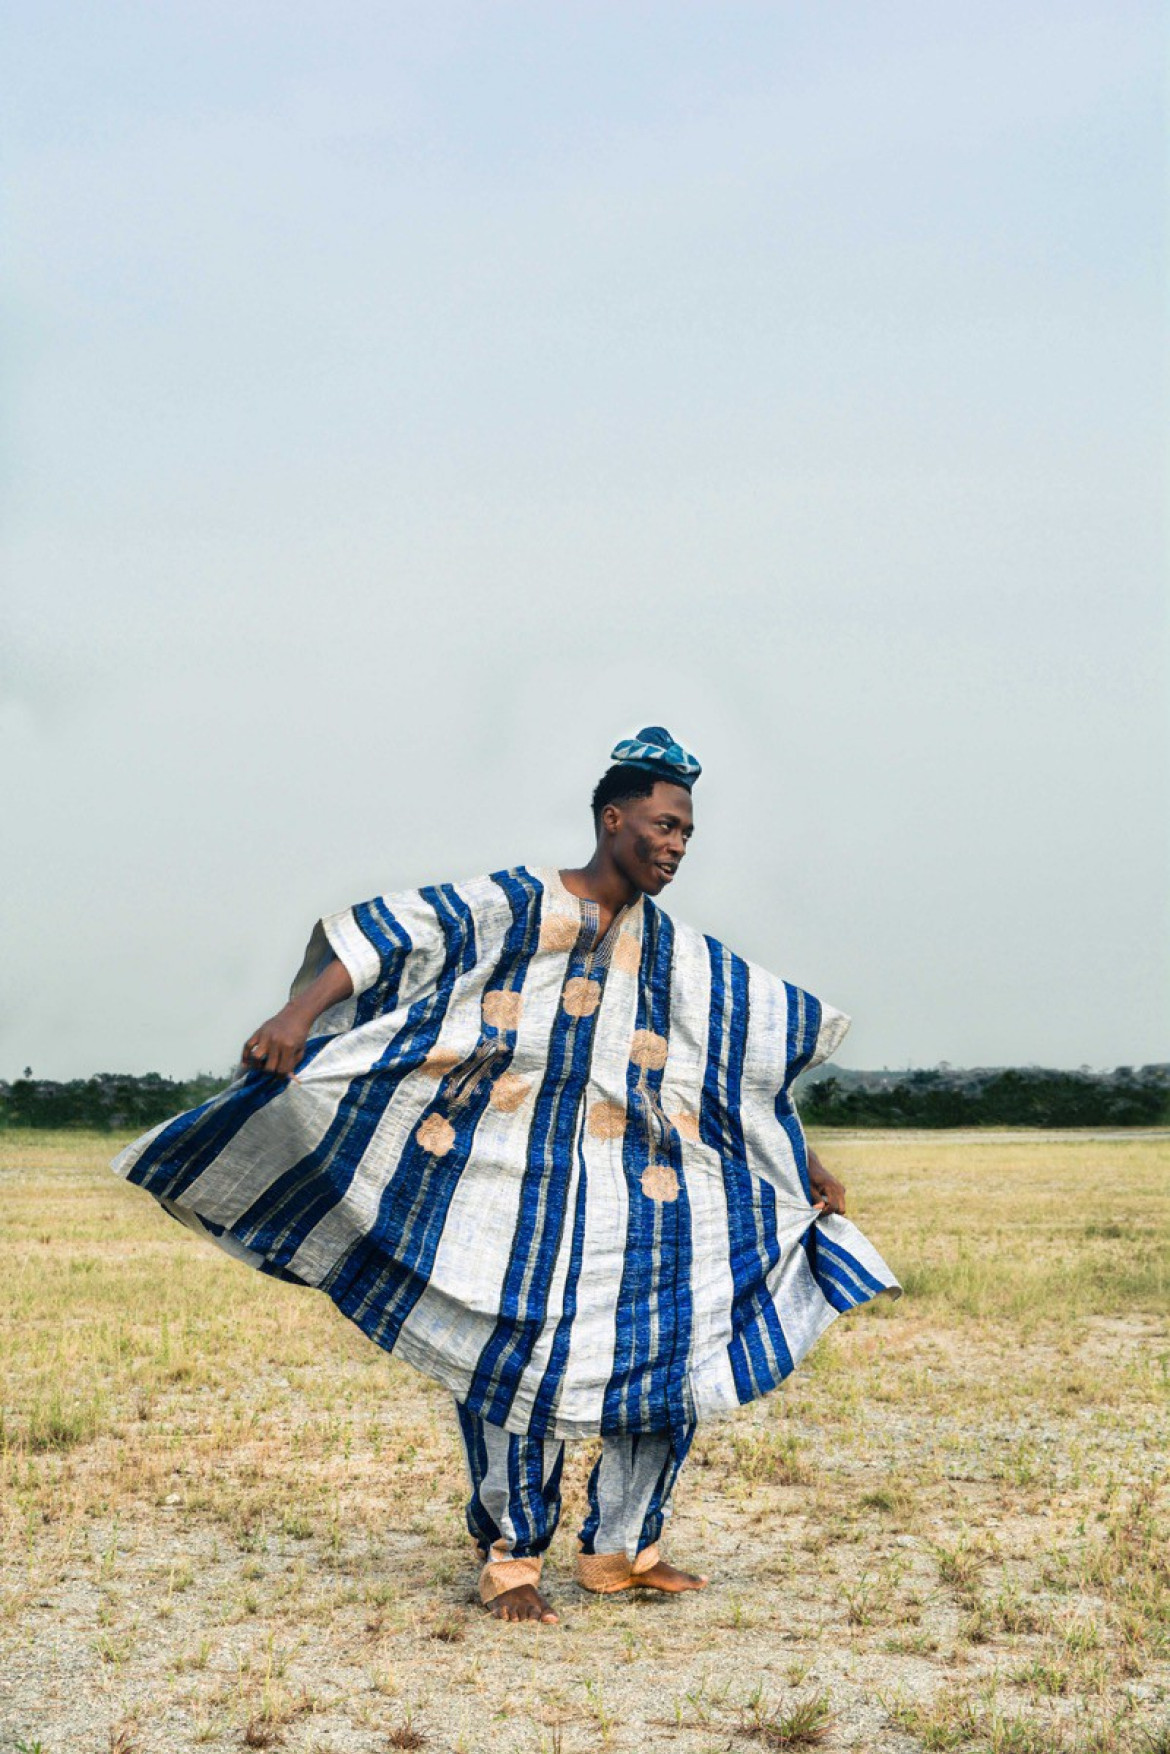 fot. Adeolu Osibodu, z cyklu "Losing Amos", główna nagroda w kategorii The Portraitist.

Gdy w 2014 roku umarł dziadek fotografa, Osibodu zrozumiał jak ulotny jego obraz posiadał w swoje świadomości. Postanowił wykonać serię autoportretów w tradycyjnych strojach, które należały do jego dziadka.